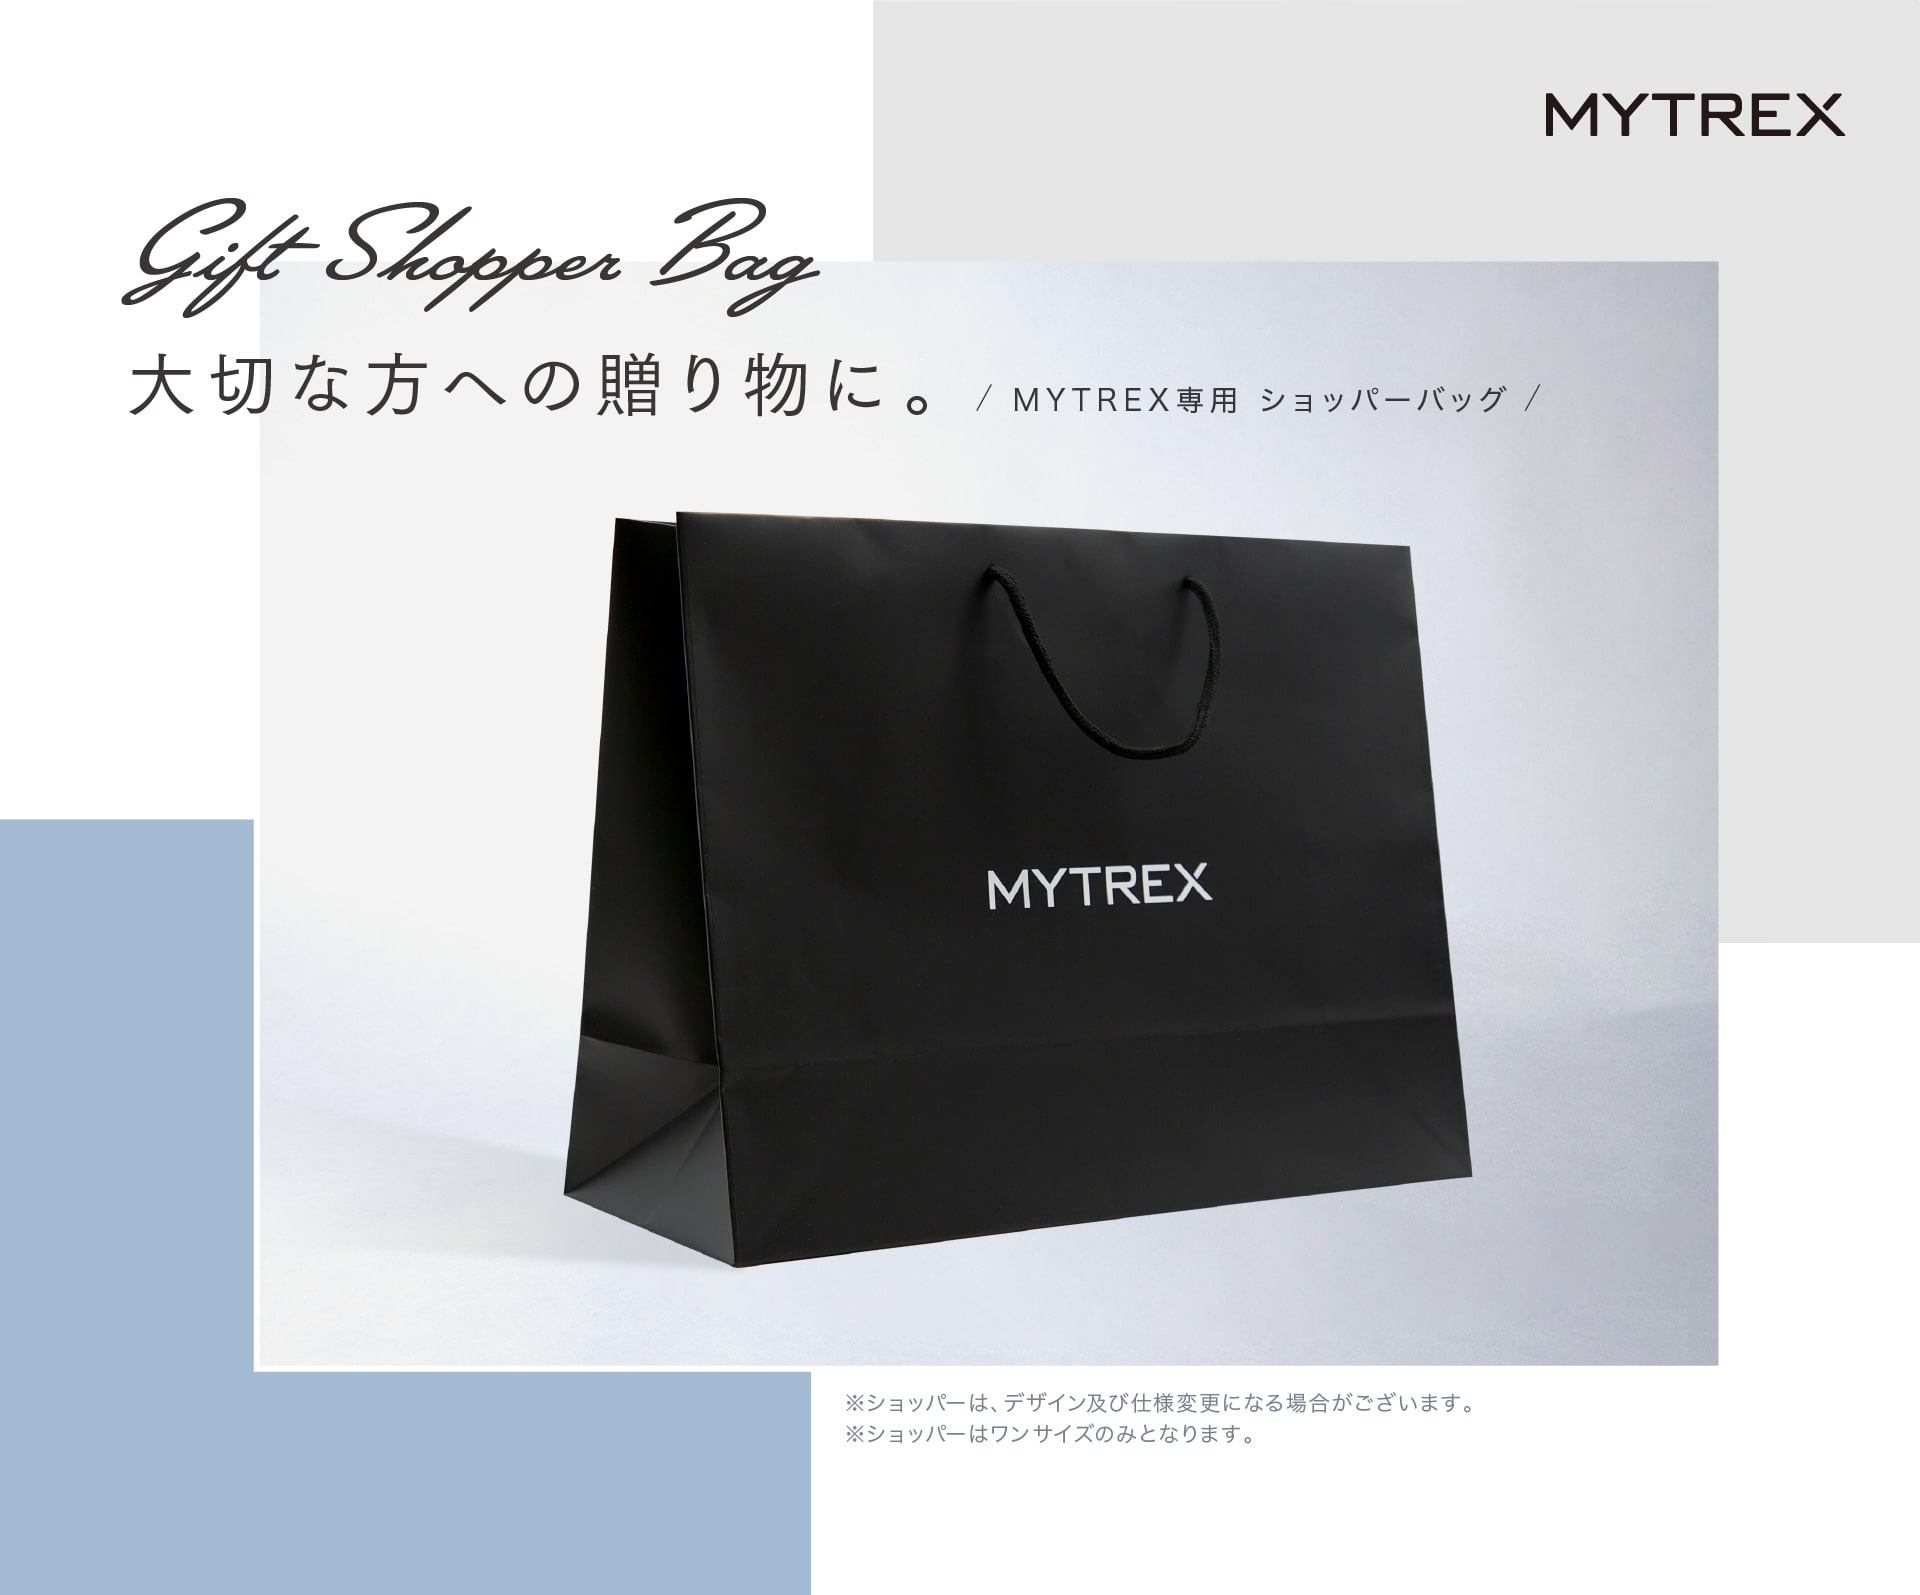 Gift Shopper Bag 大切な方への贈り物に。MYTREX専用 ショッパーバッグ ※ショッパーは、デザイン及び仕様変更になる場合がございます。※ショッパーはワンサイズのみとなります。